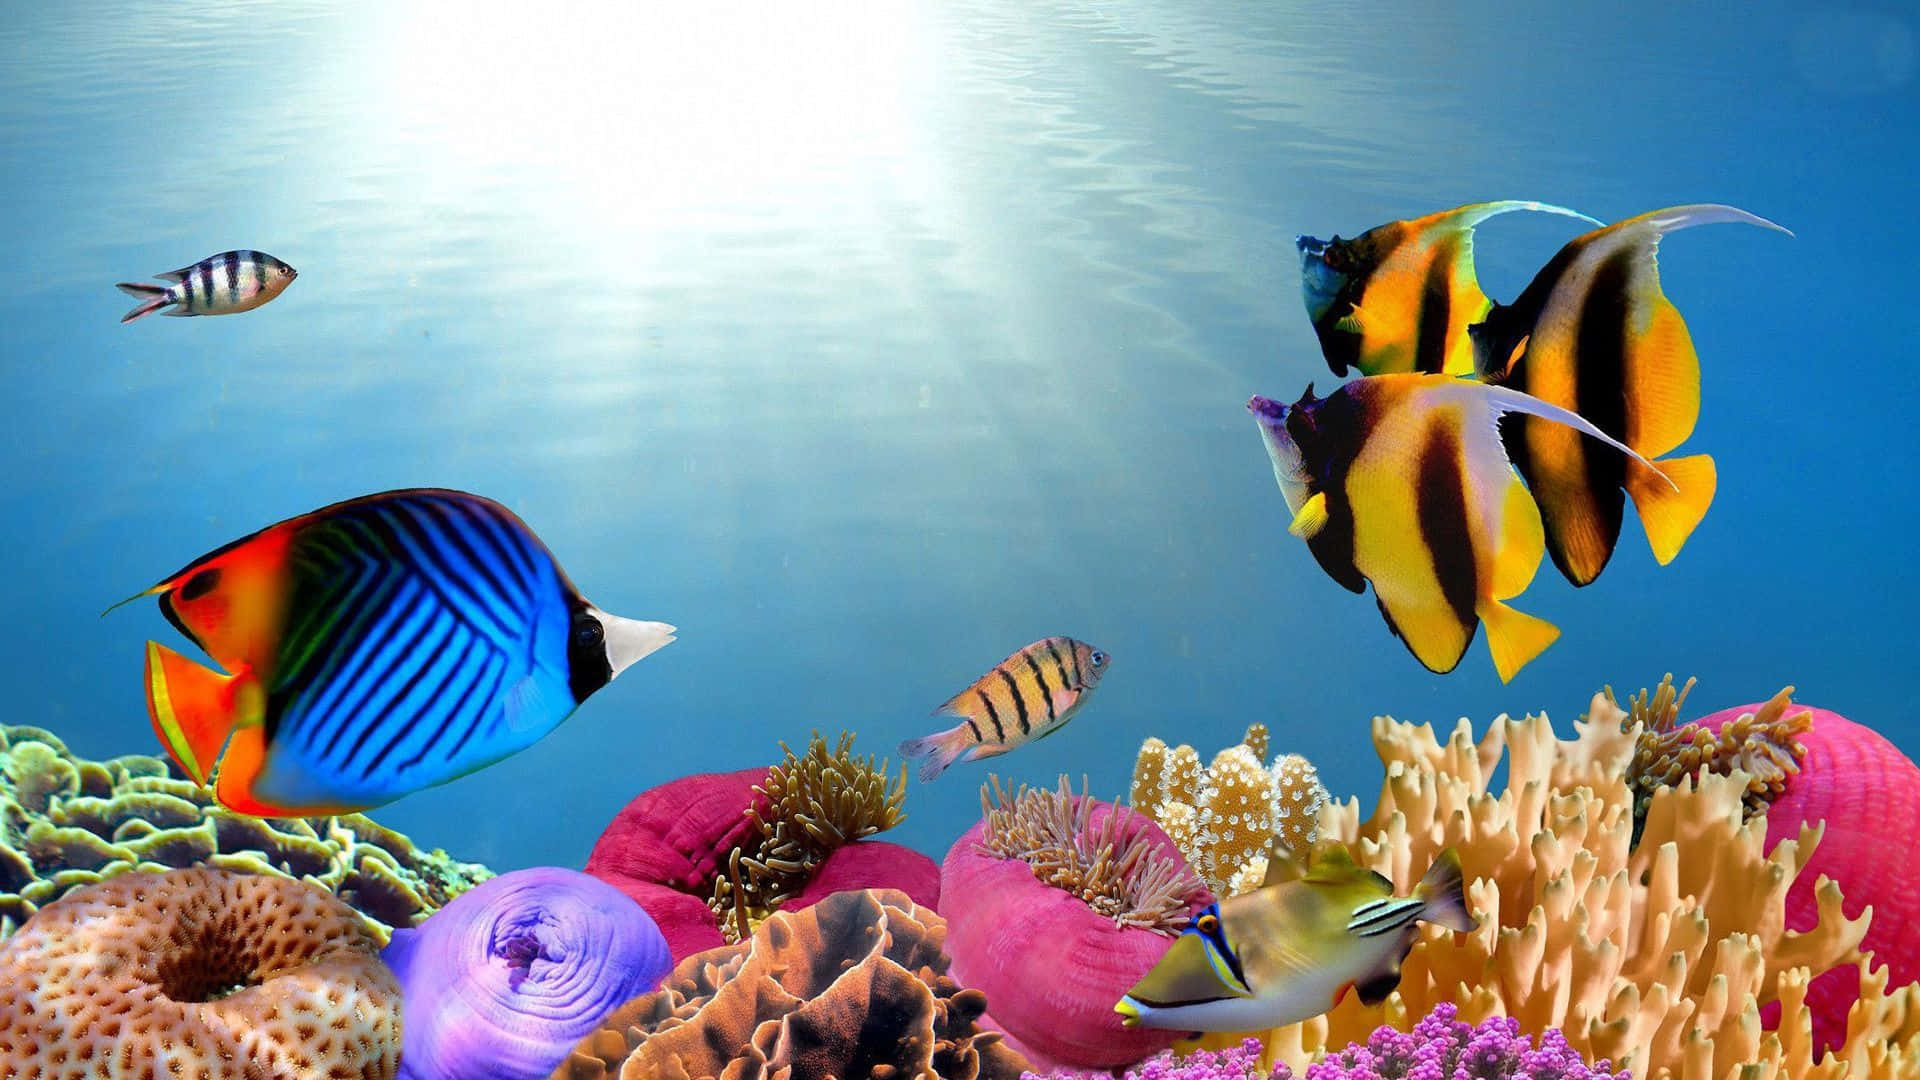 Et farverigt undervandsbillede med fisk og koraller. Wallpaper